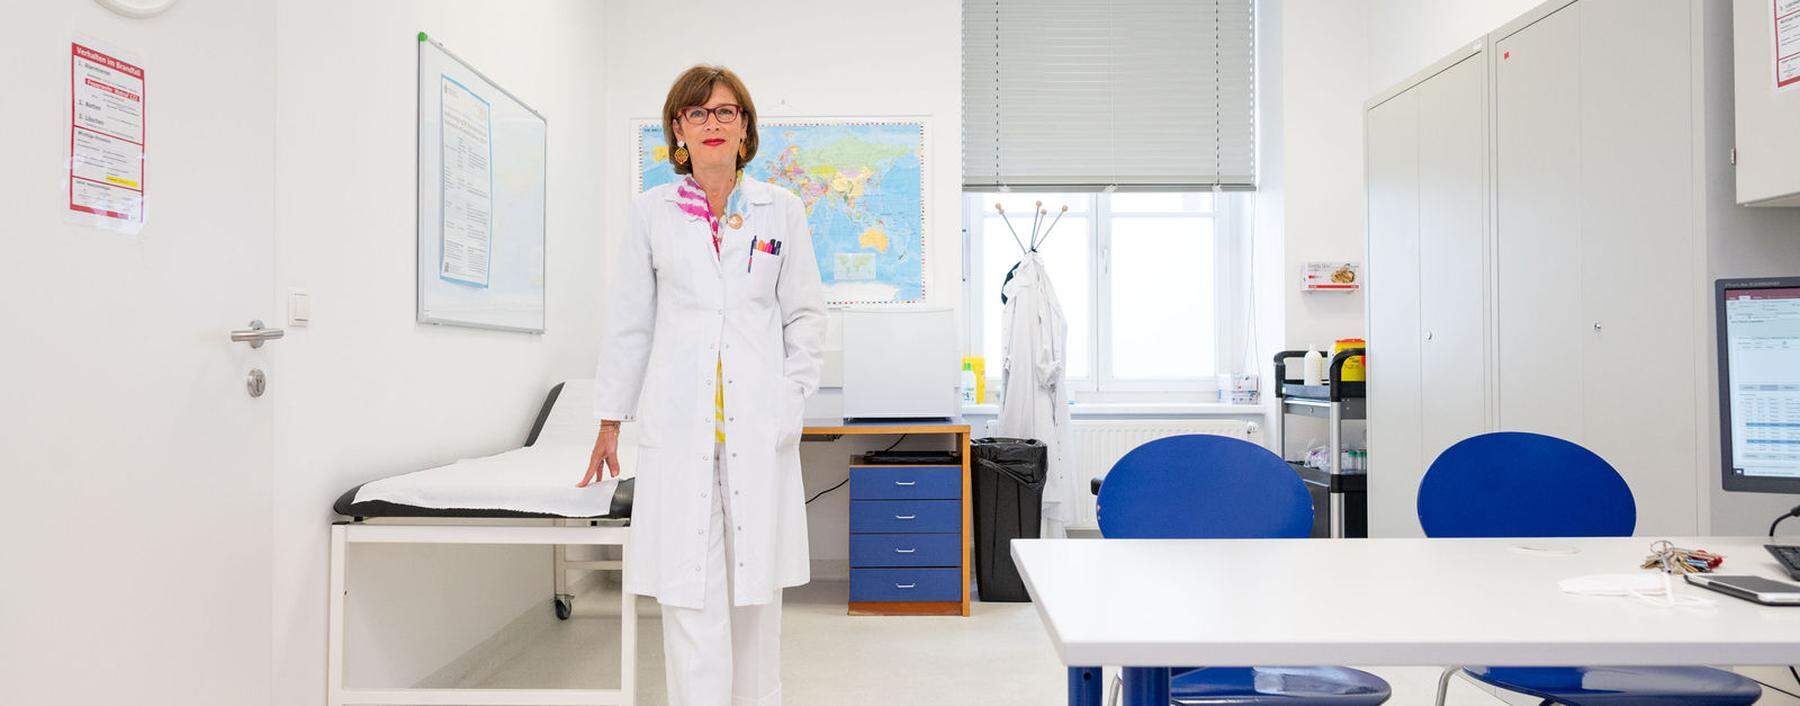 Ursula Wiedermann-Schmidt ist Leiterin des Zentrums für Pathophysiologie, Infektiologie und Immunologie an der Med-Uni Wien.